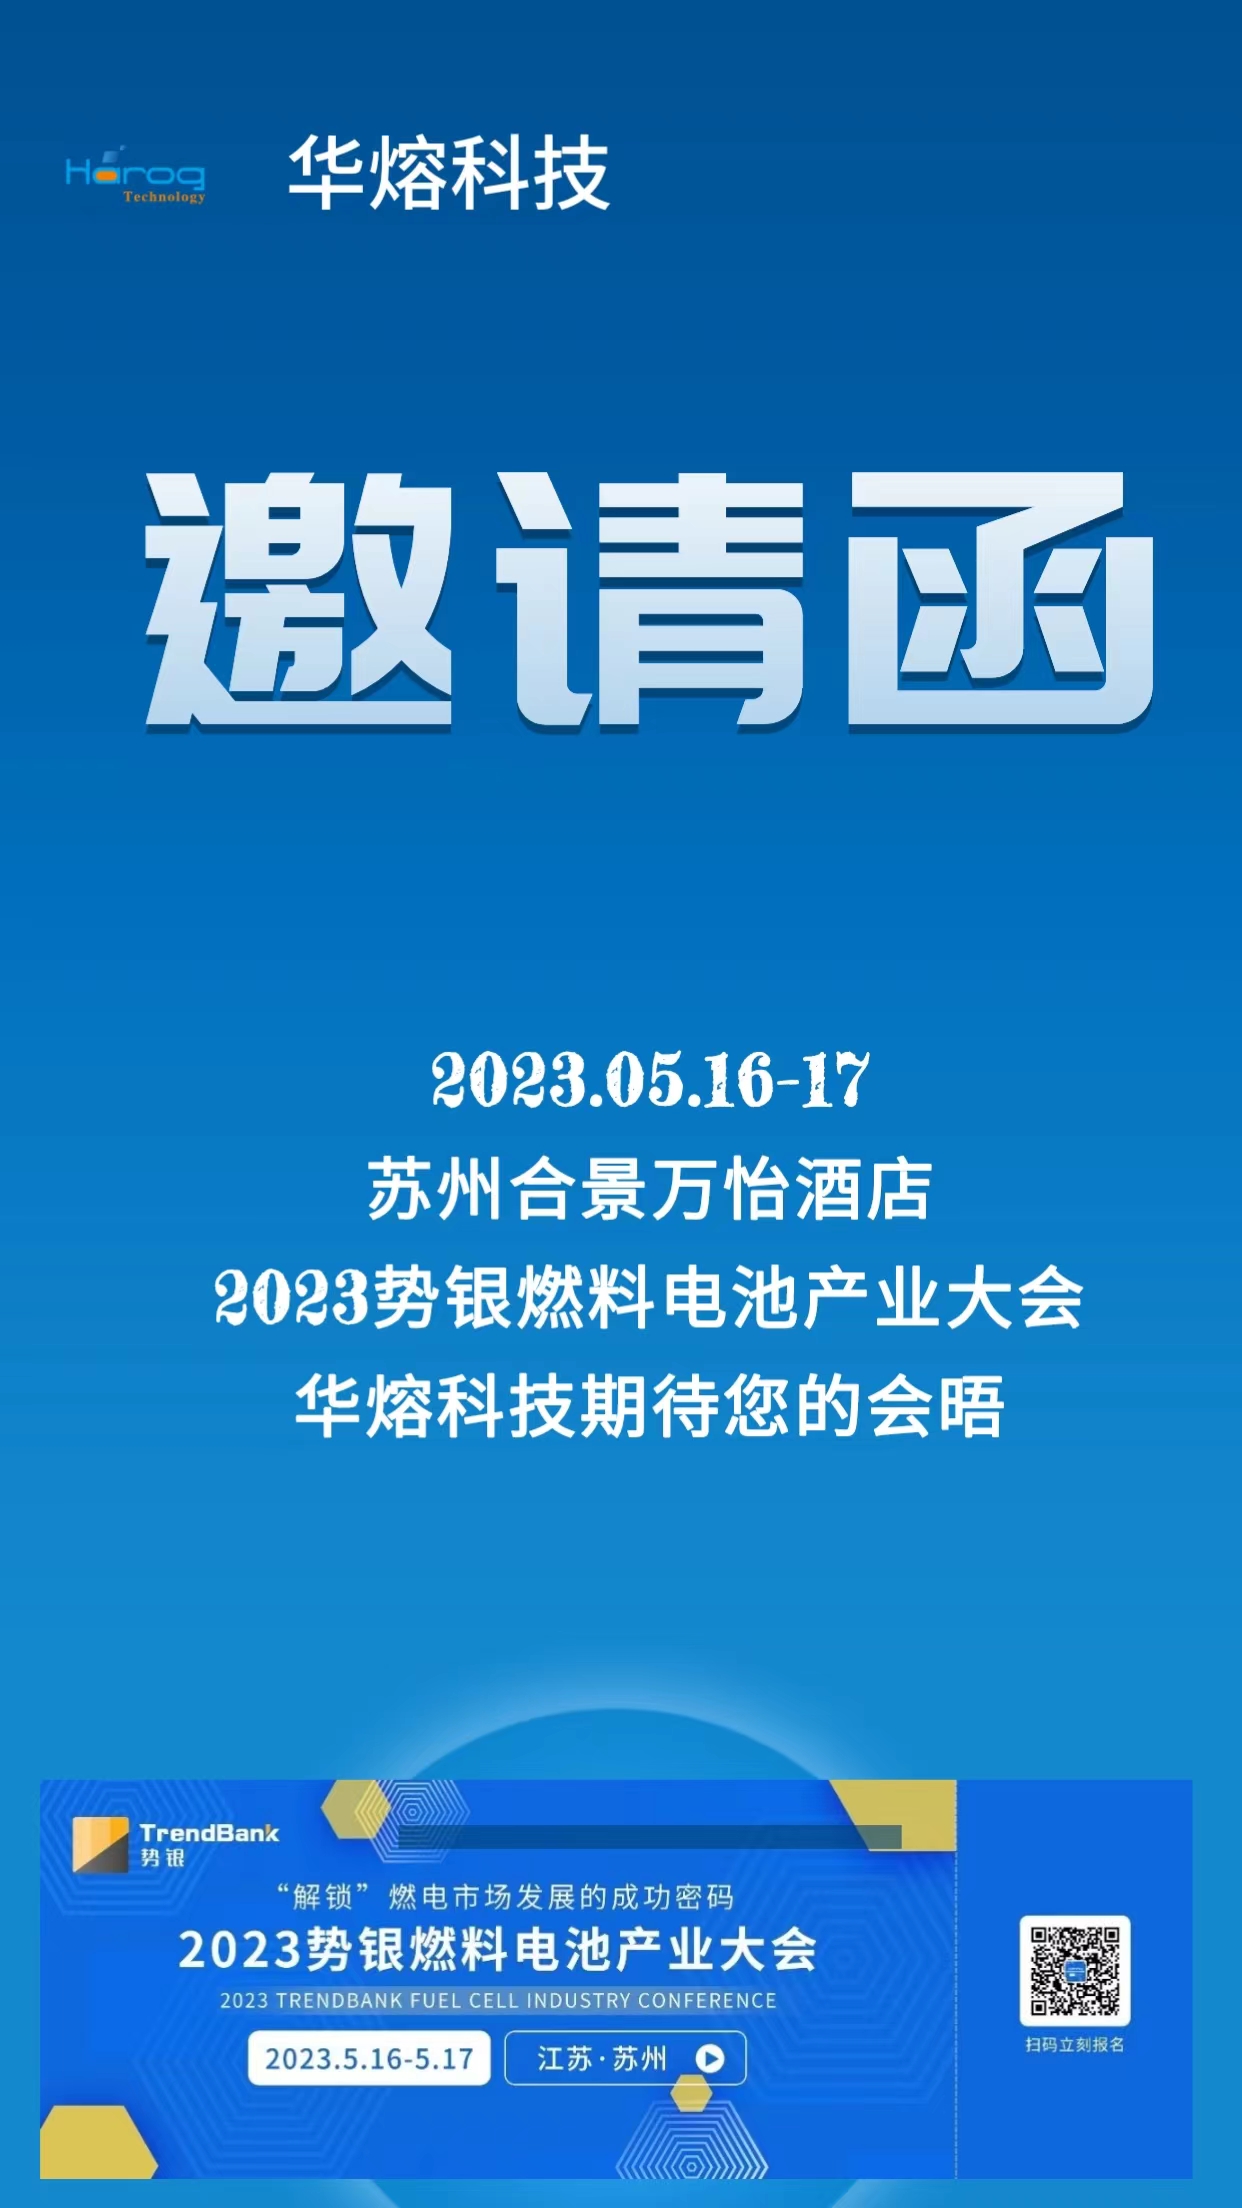 华熔科技出席2023苏州势银燃料电池大会